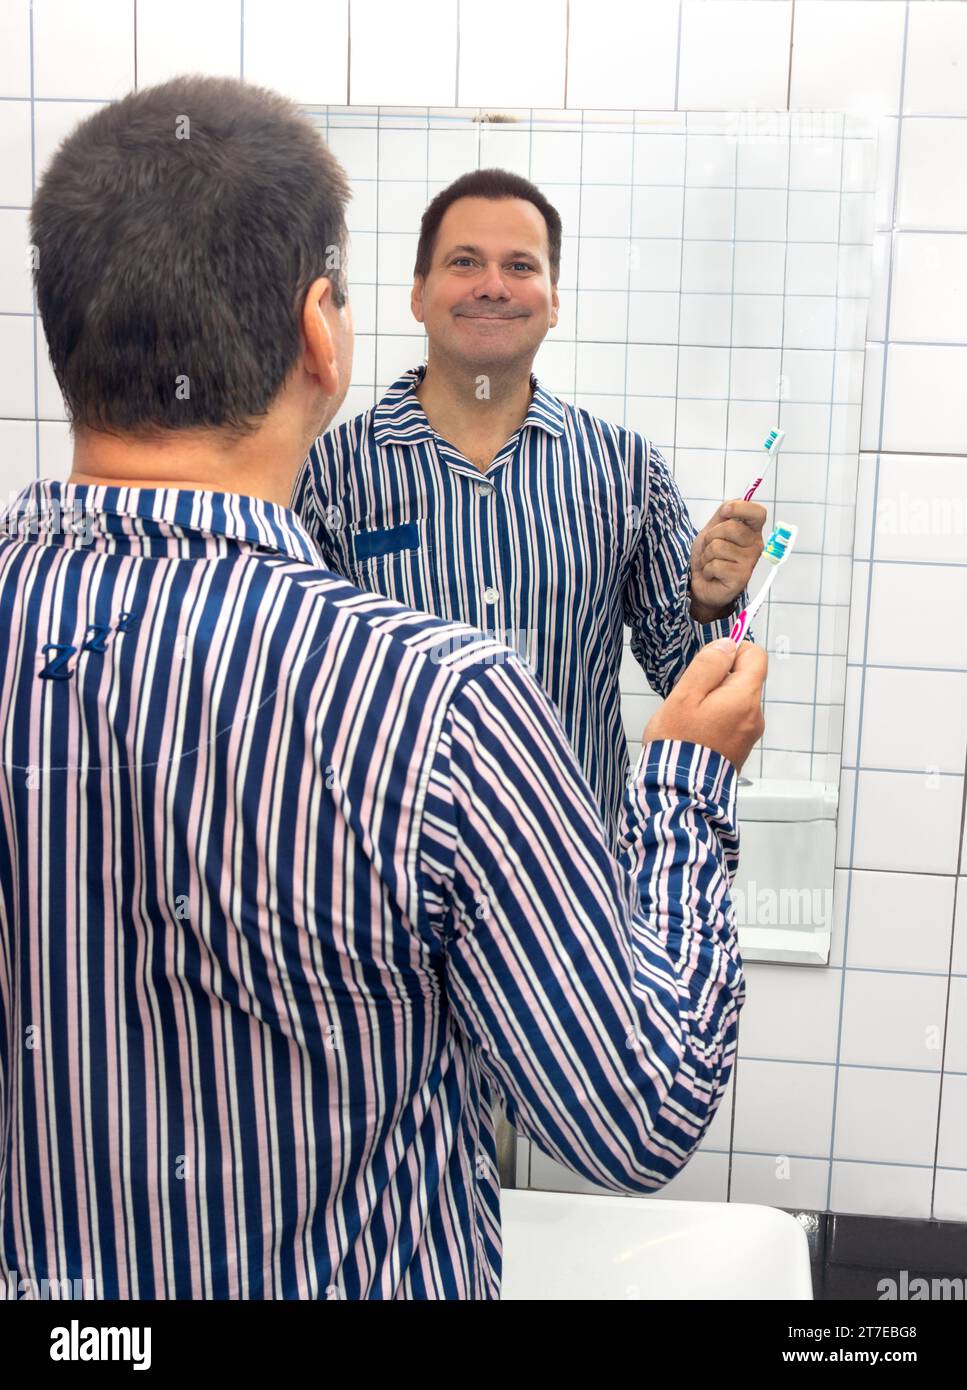 Un uomo sorridente in pigiama tiene uno spazzolino da denti e guarda nello specchio del bagno Foto Stock